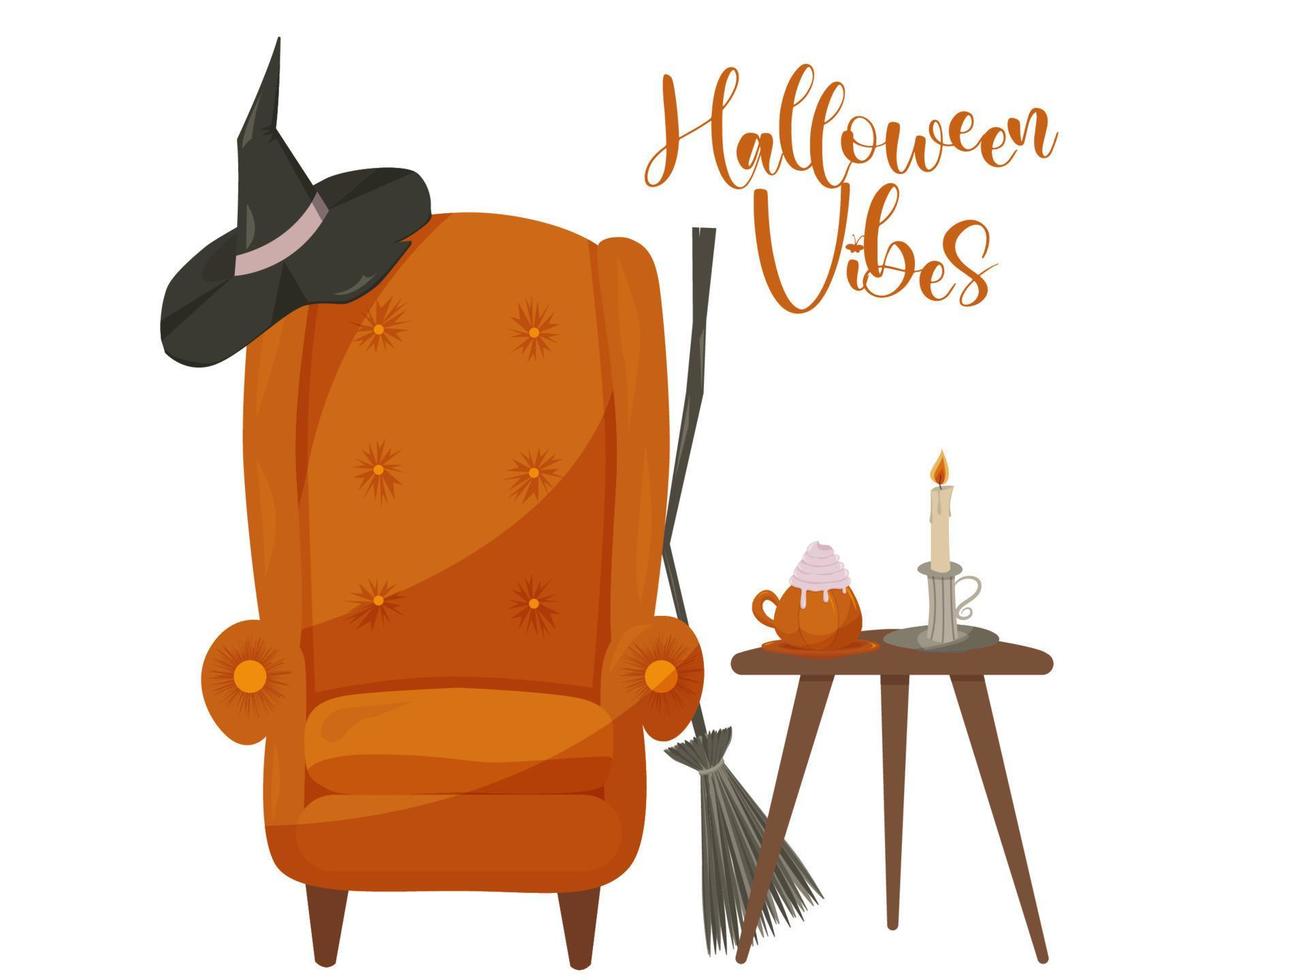 orange hygge häxa stol med kaffe tabell, kvast, latte och ljus, halloween vibrafon. vektor illustration